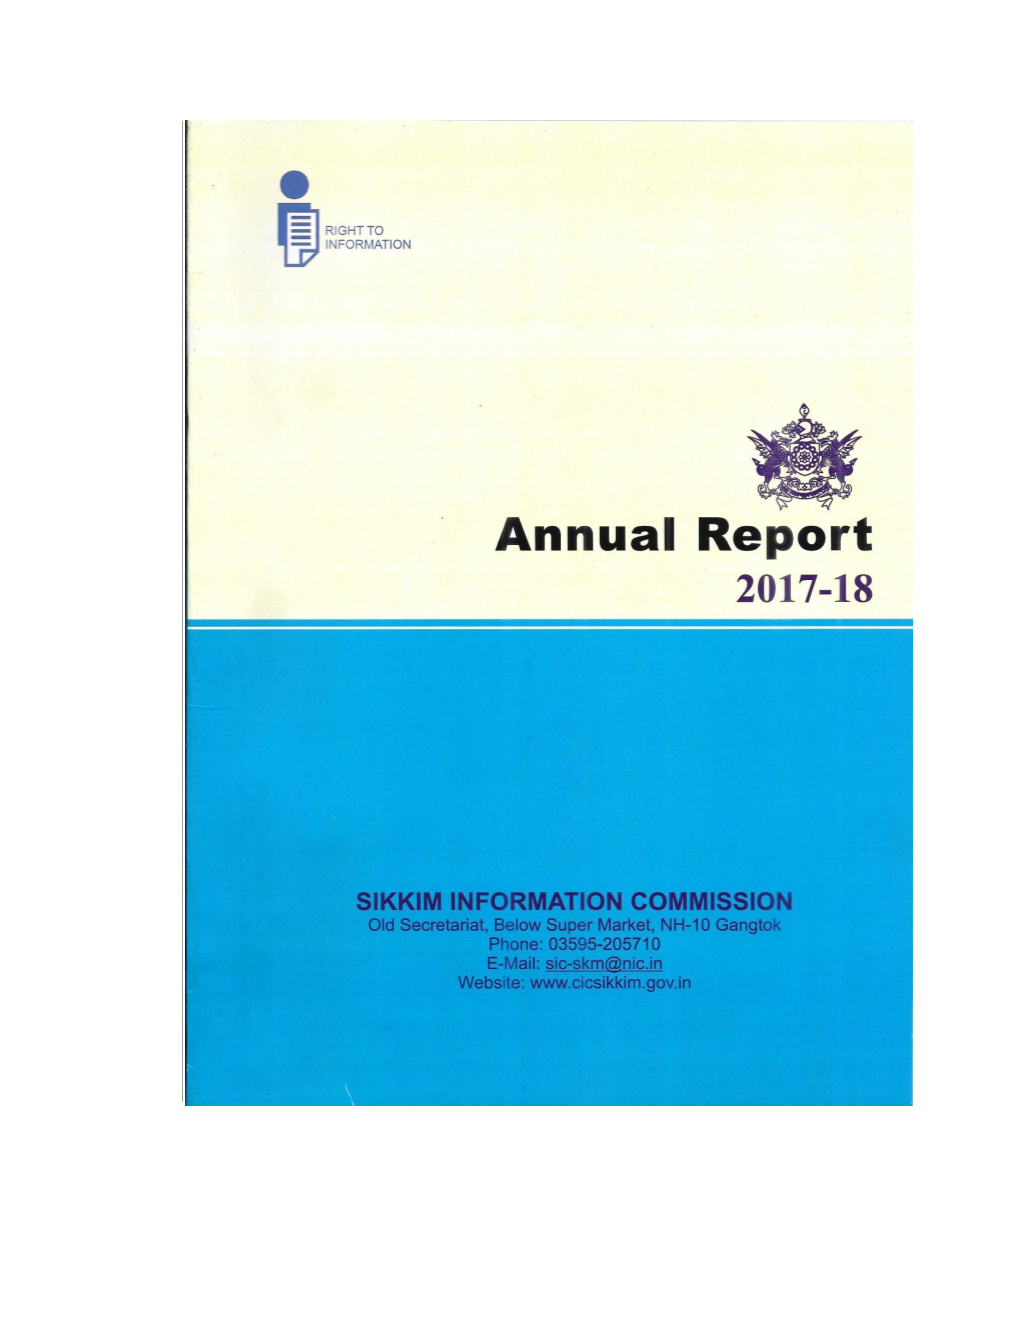 Annual Report 2017-2018 20210423.Pdf